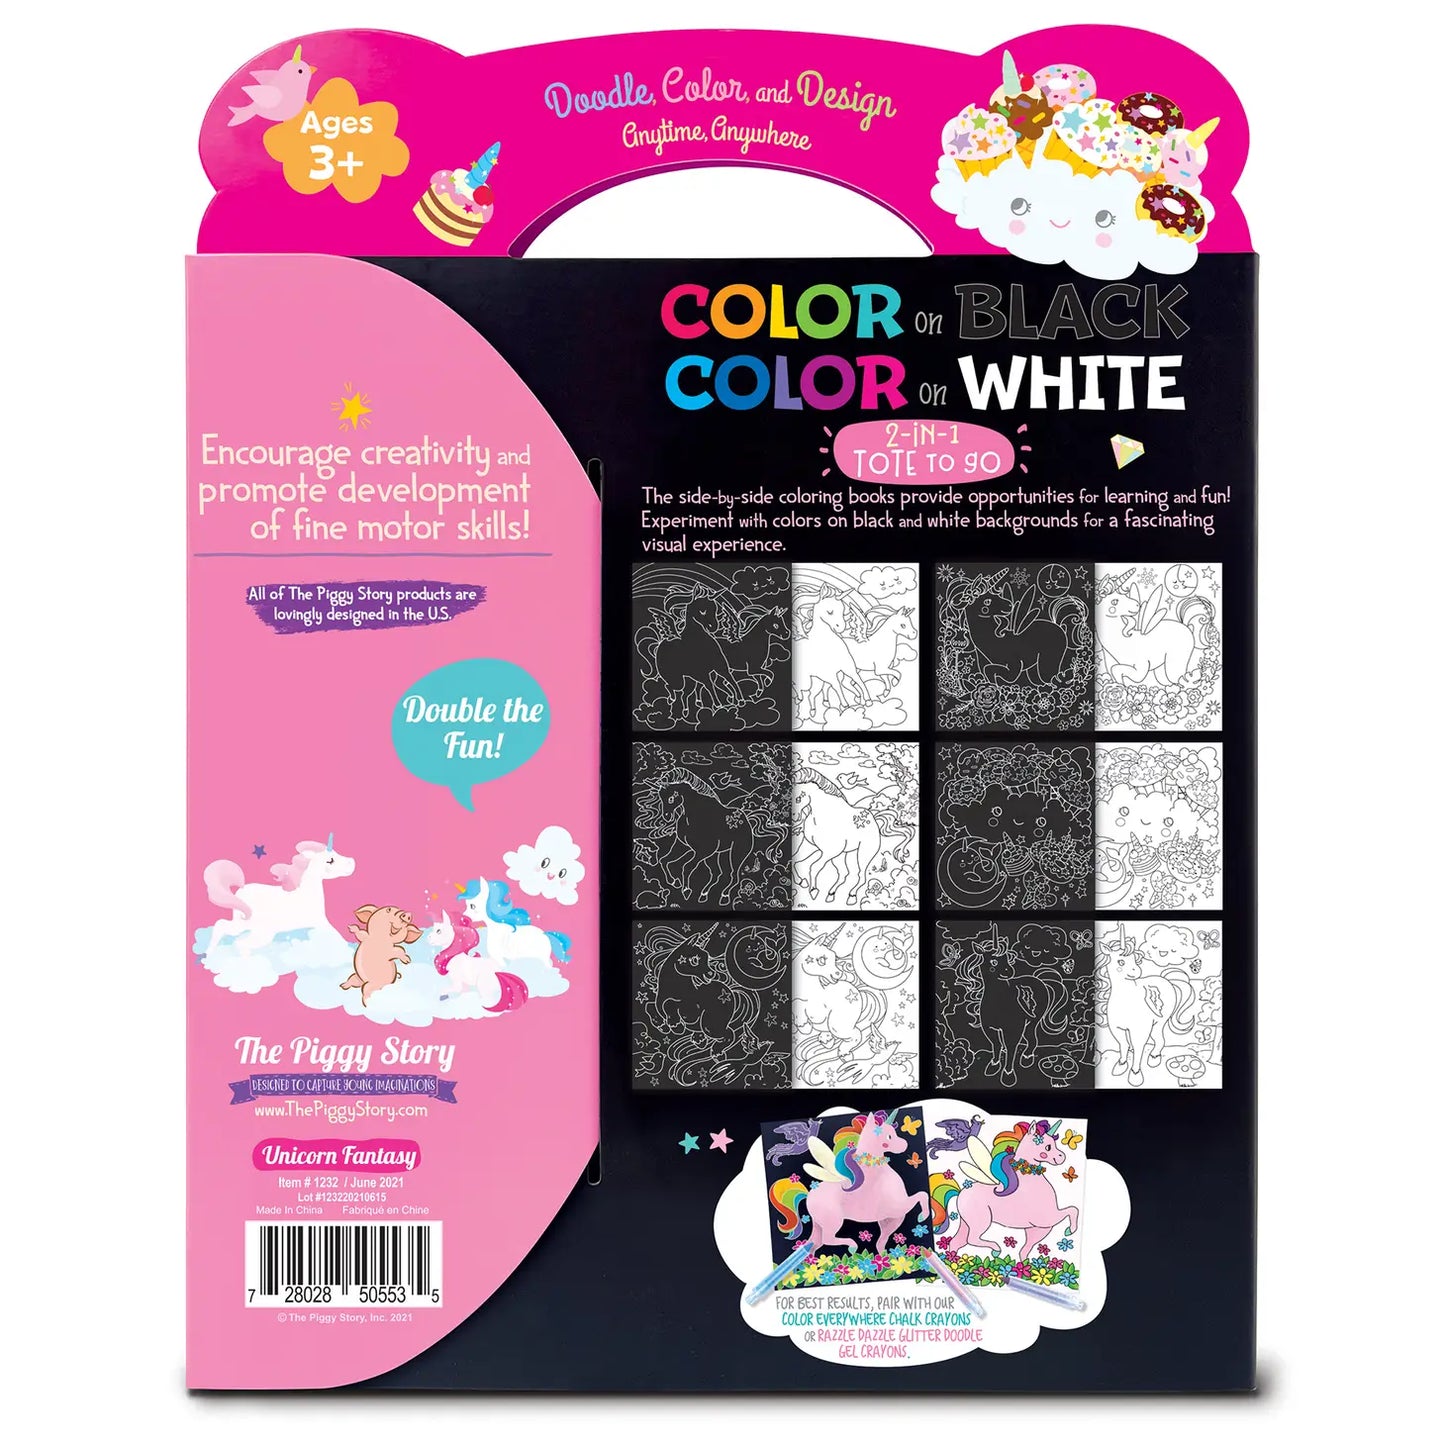 Color on Black, Color on White, 2-in-1 Tote Unicorn Fantasy